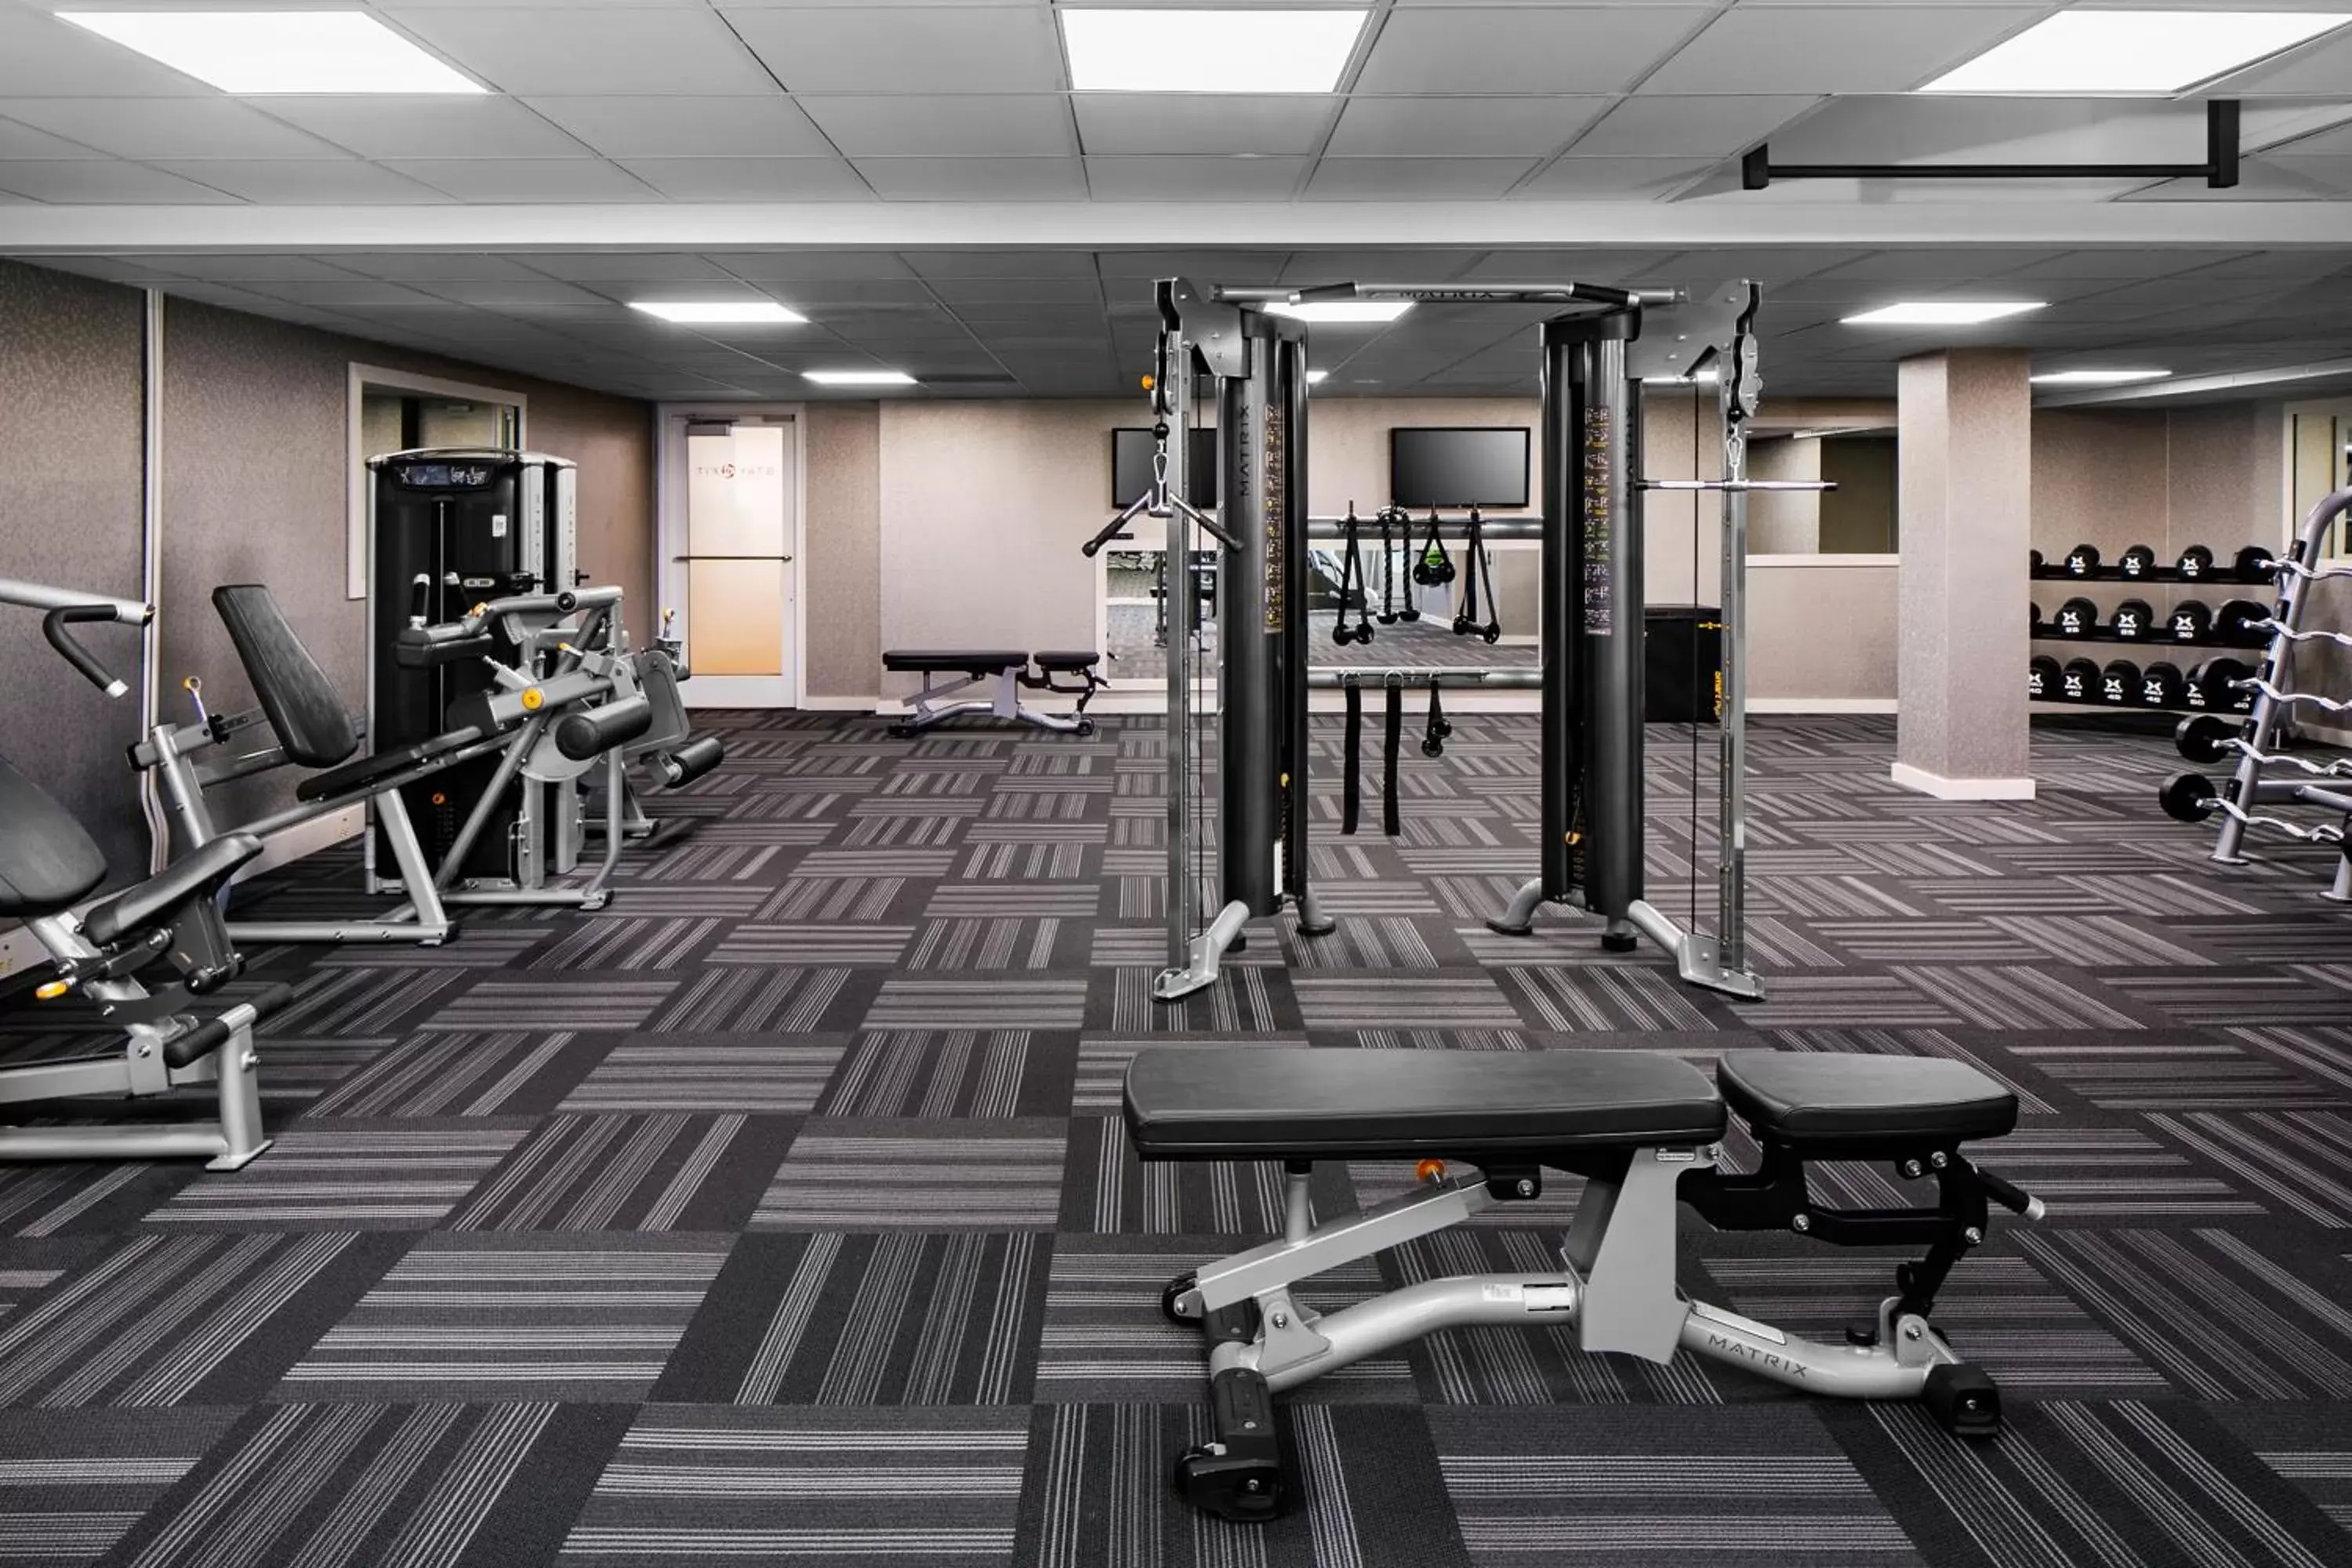 Fitness centre/facilities, Fitness Center/Facilities in Hyatt Regency Wichita